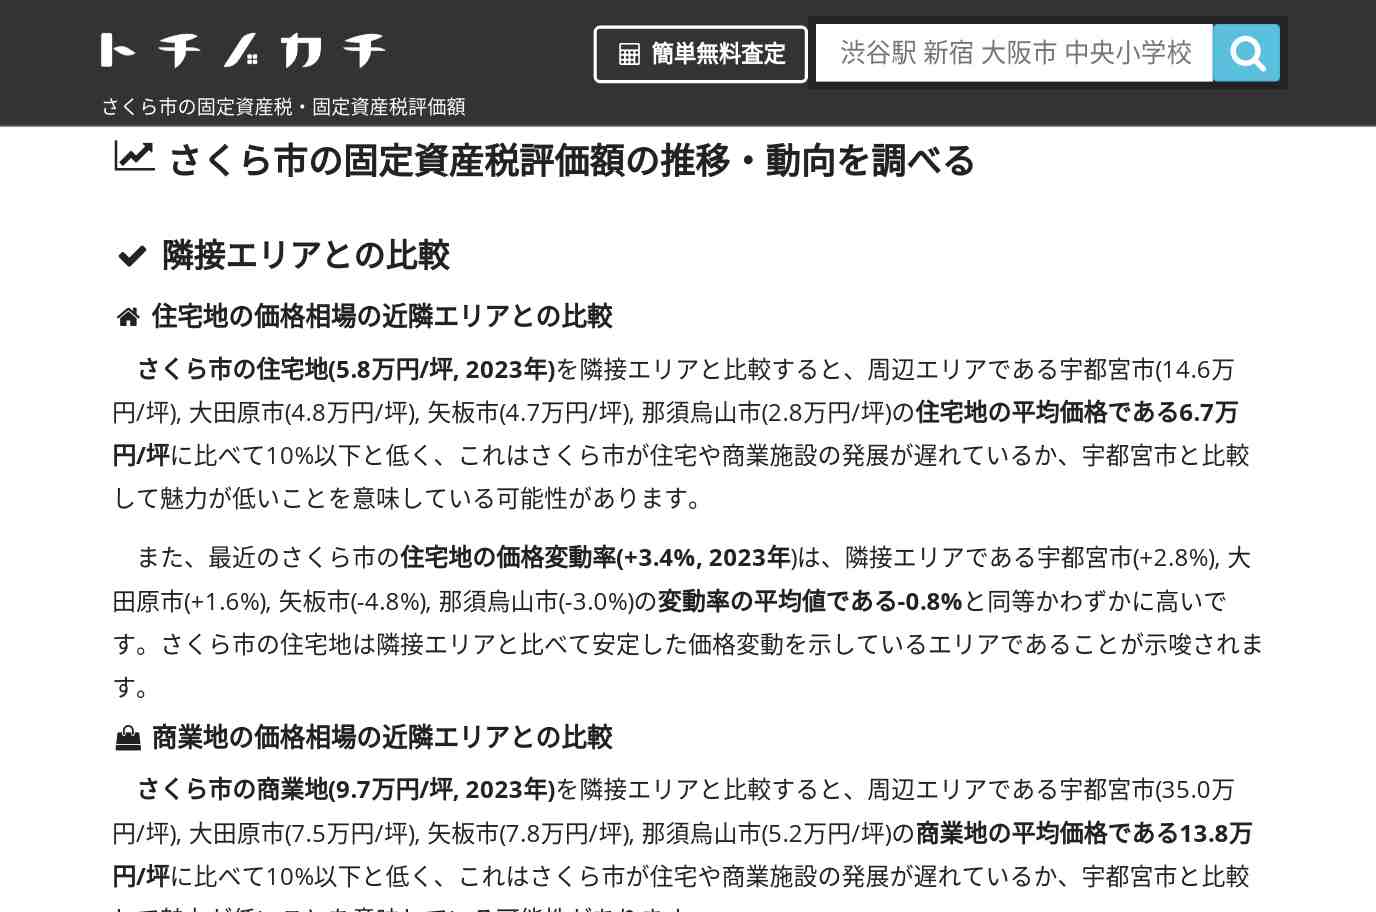 南小学校(栃木県 さくら市)周辺の固定資産税・固定資産税評価額 | トチノカチ